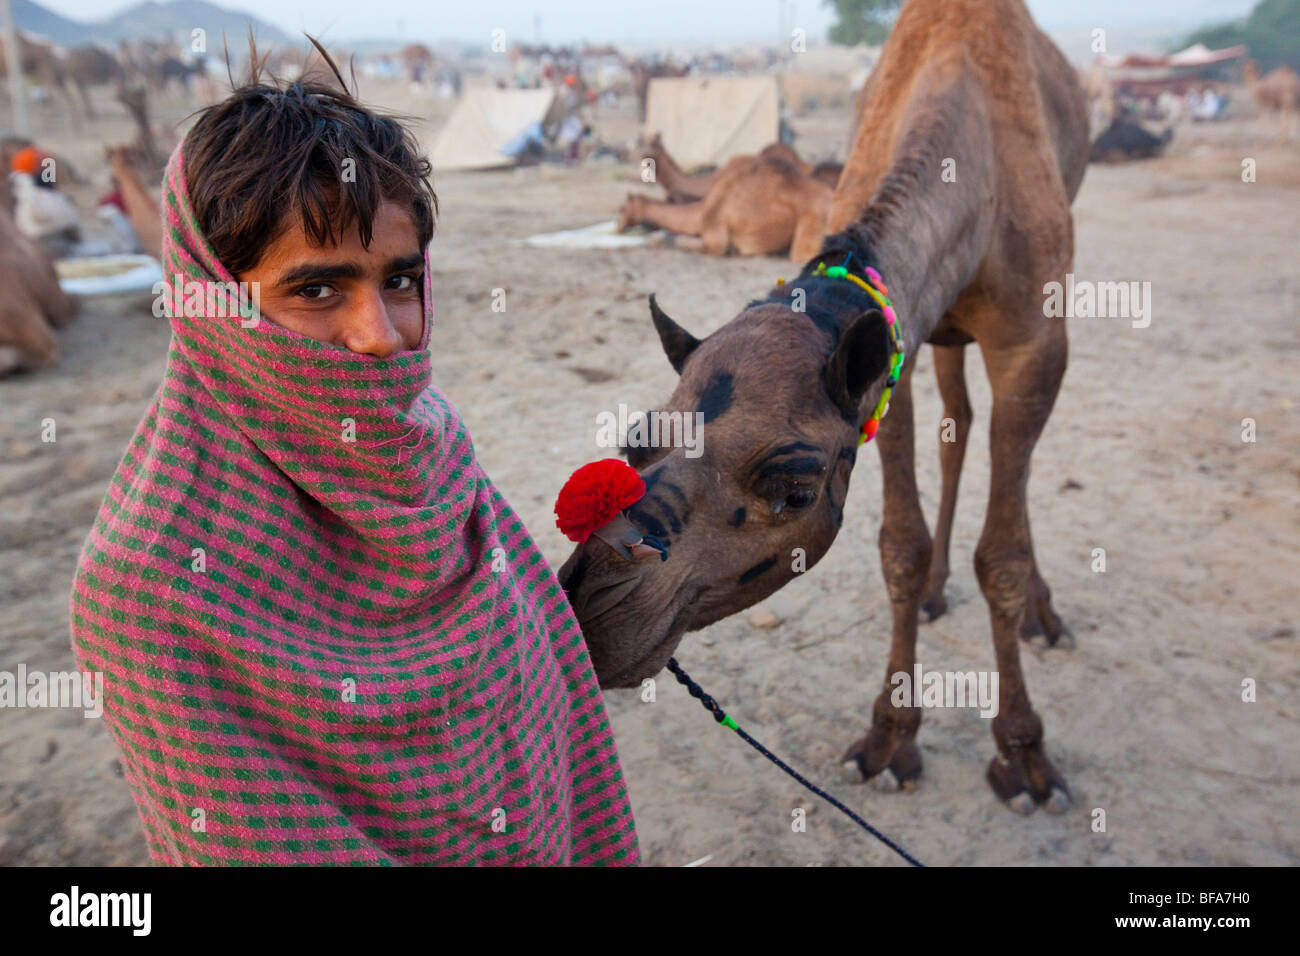 Garçon Rajput et son chameau dans la matinée à la Camel Fair de Pushkar Inde Banque D'Images